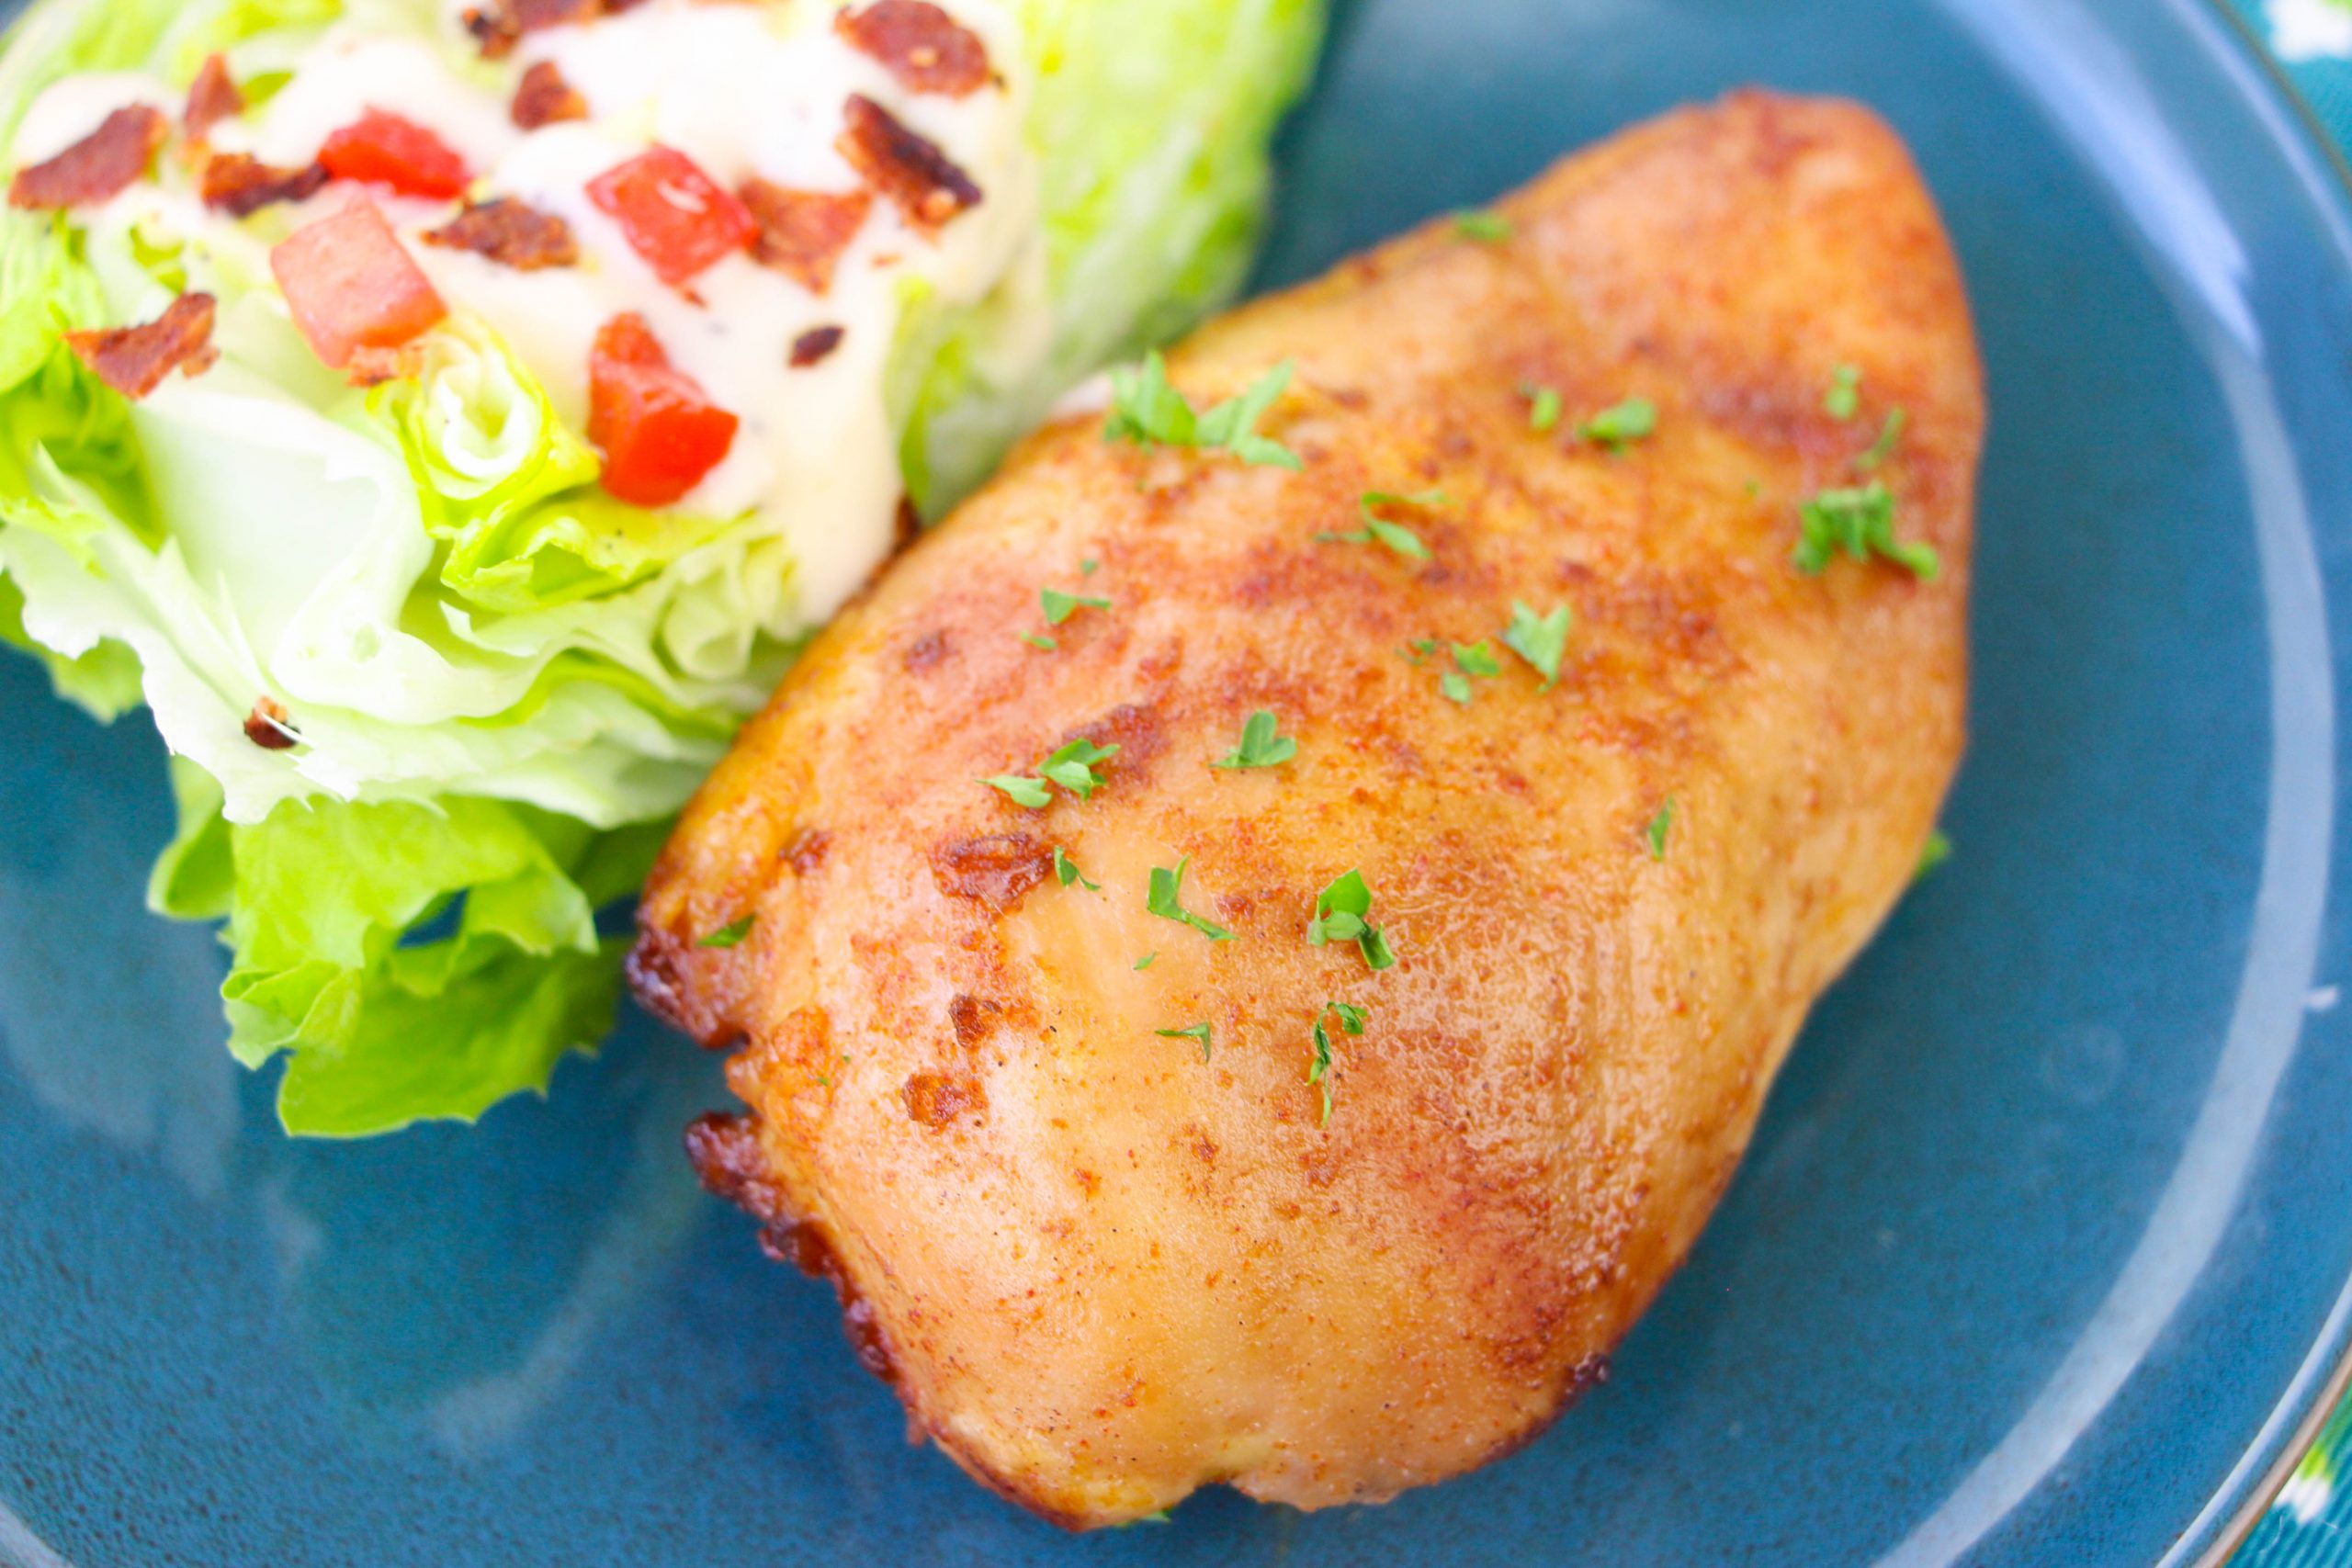 marinated chicken breast